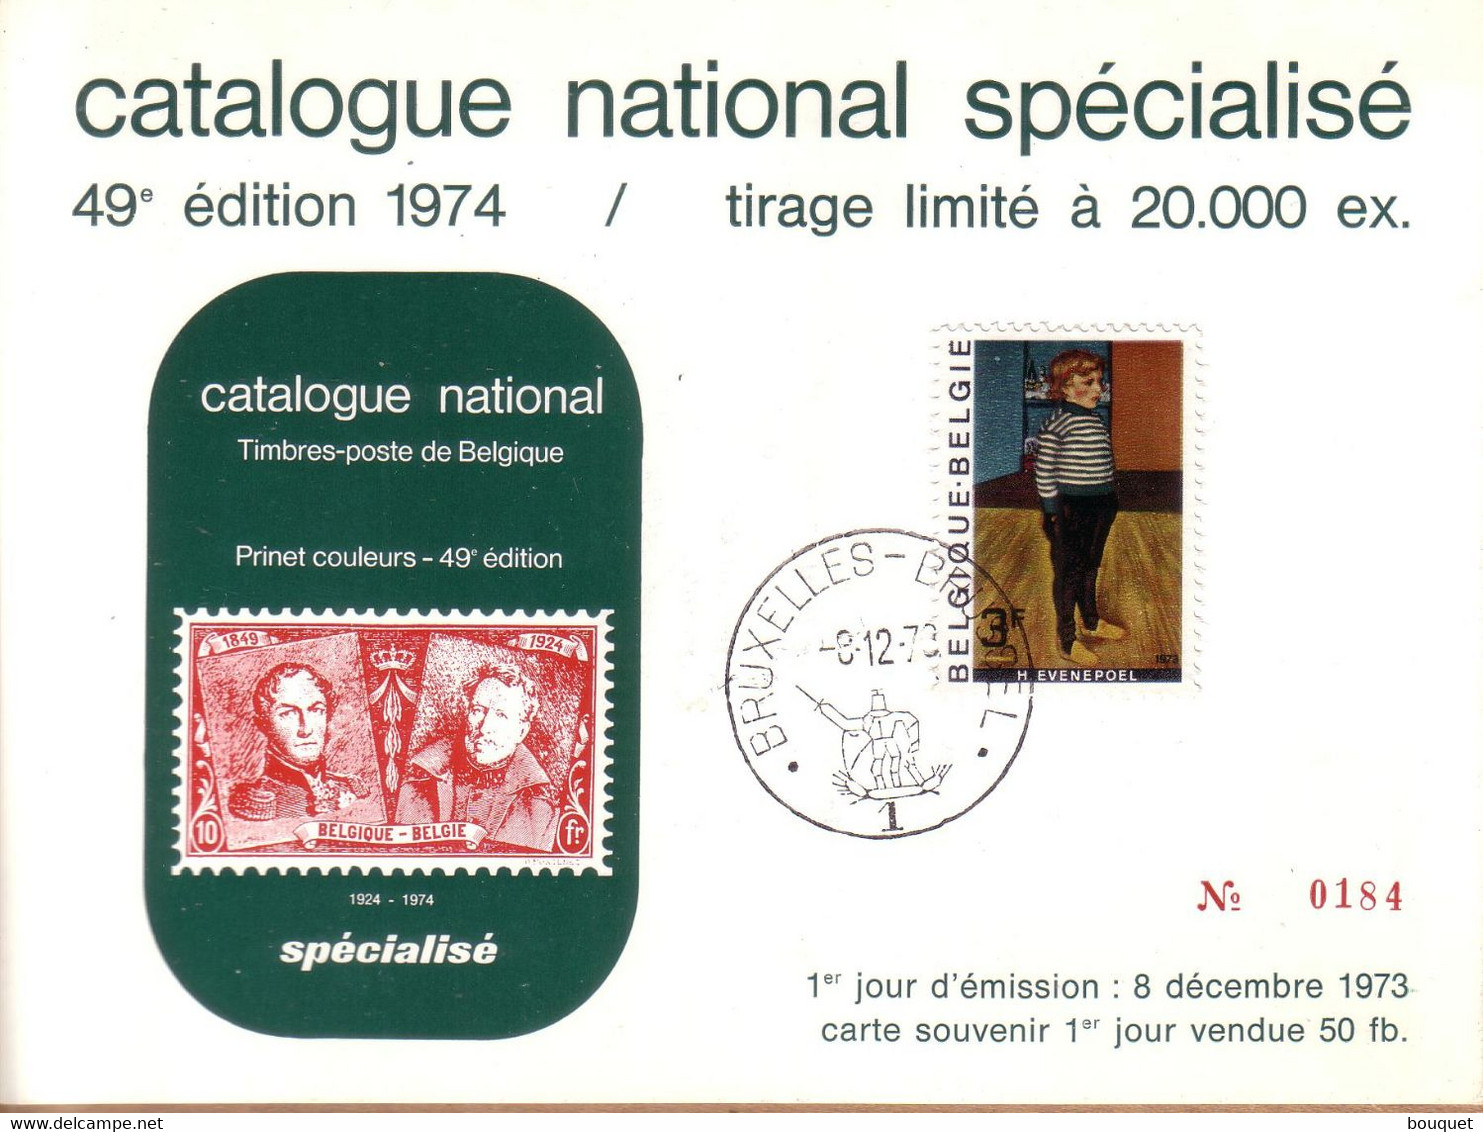 BELGIQUE - CARTE SOUVENIR CATALOGUE NATIONAL BRUXELLES , 1ER JOUR 8 DECEMBRE 1973 , 3 F H. EVENEPOEL - Erinnerungskarten – Gemeinschaftsausgaben [HK]